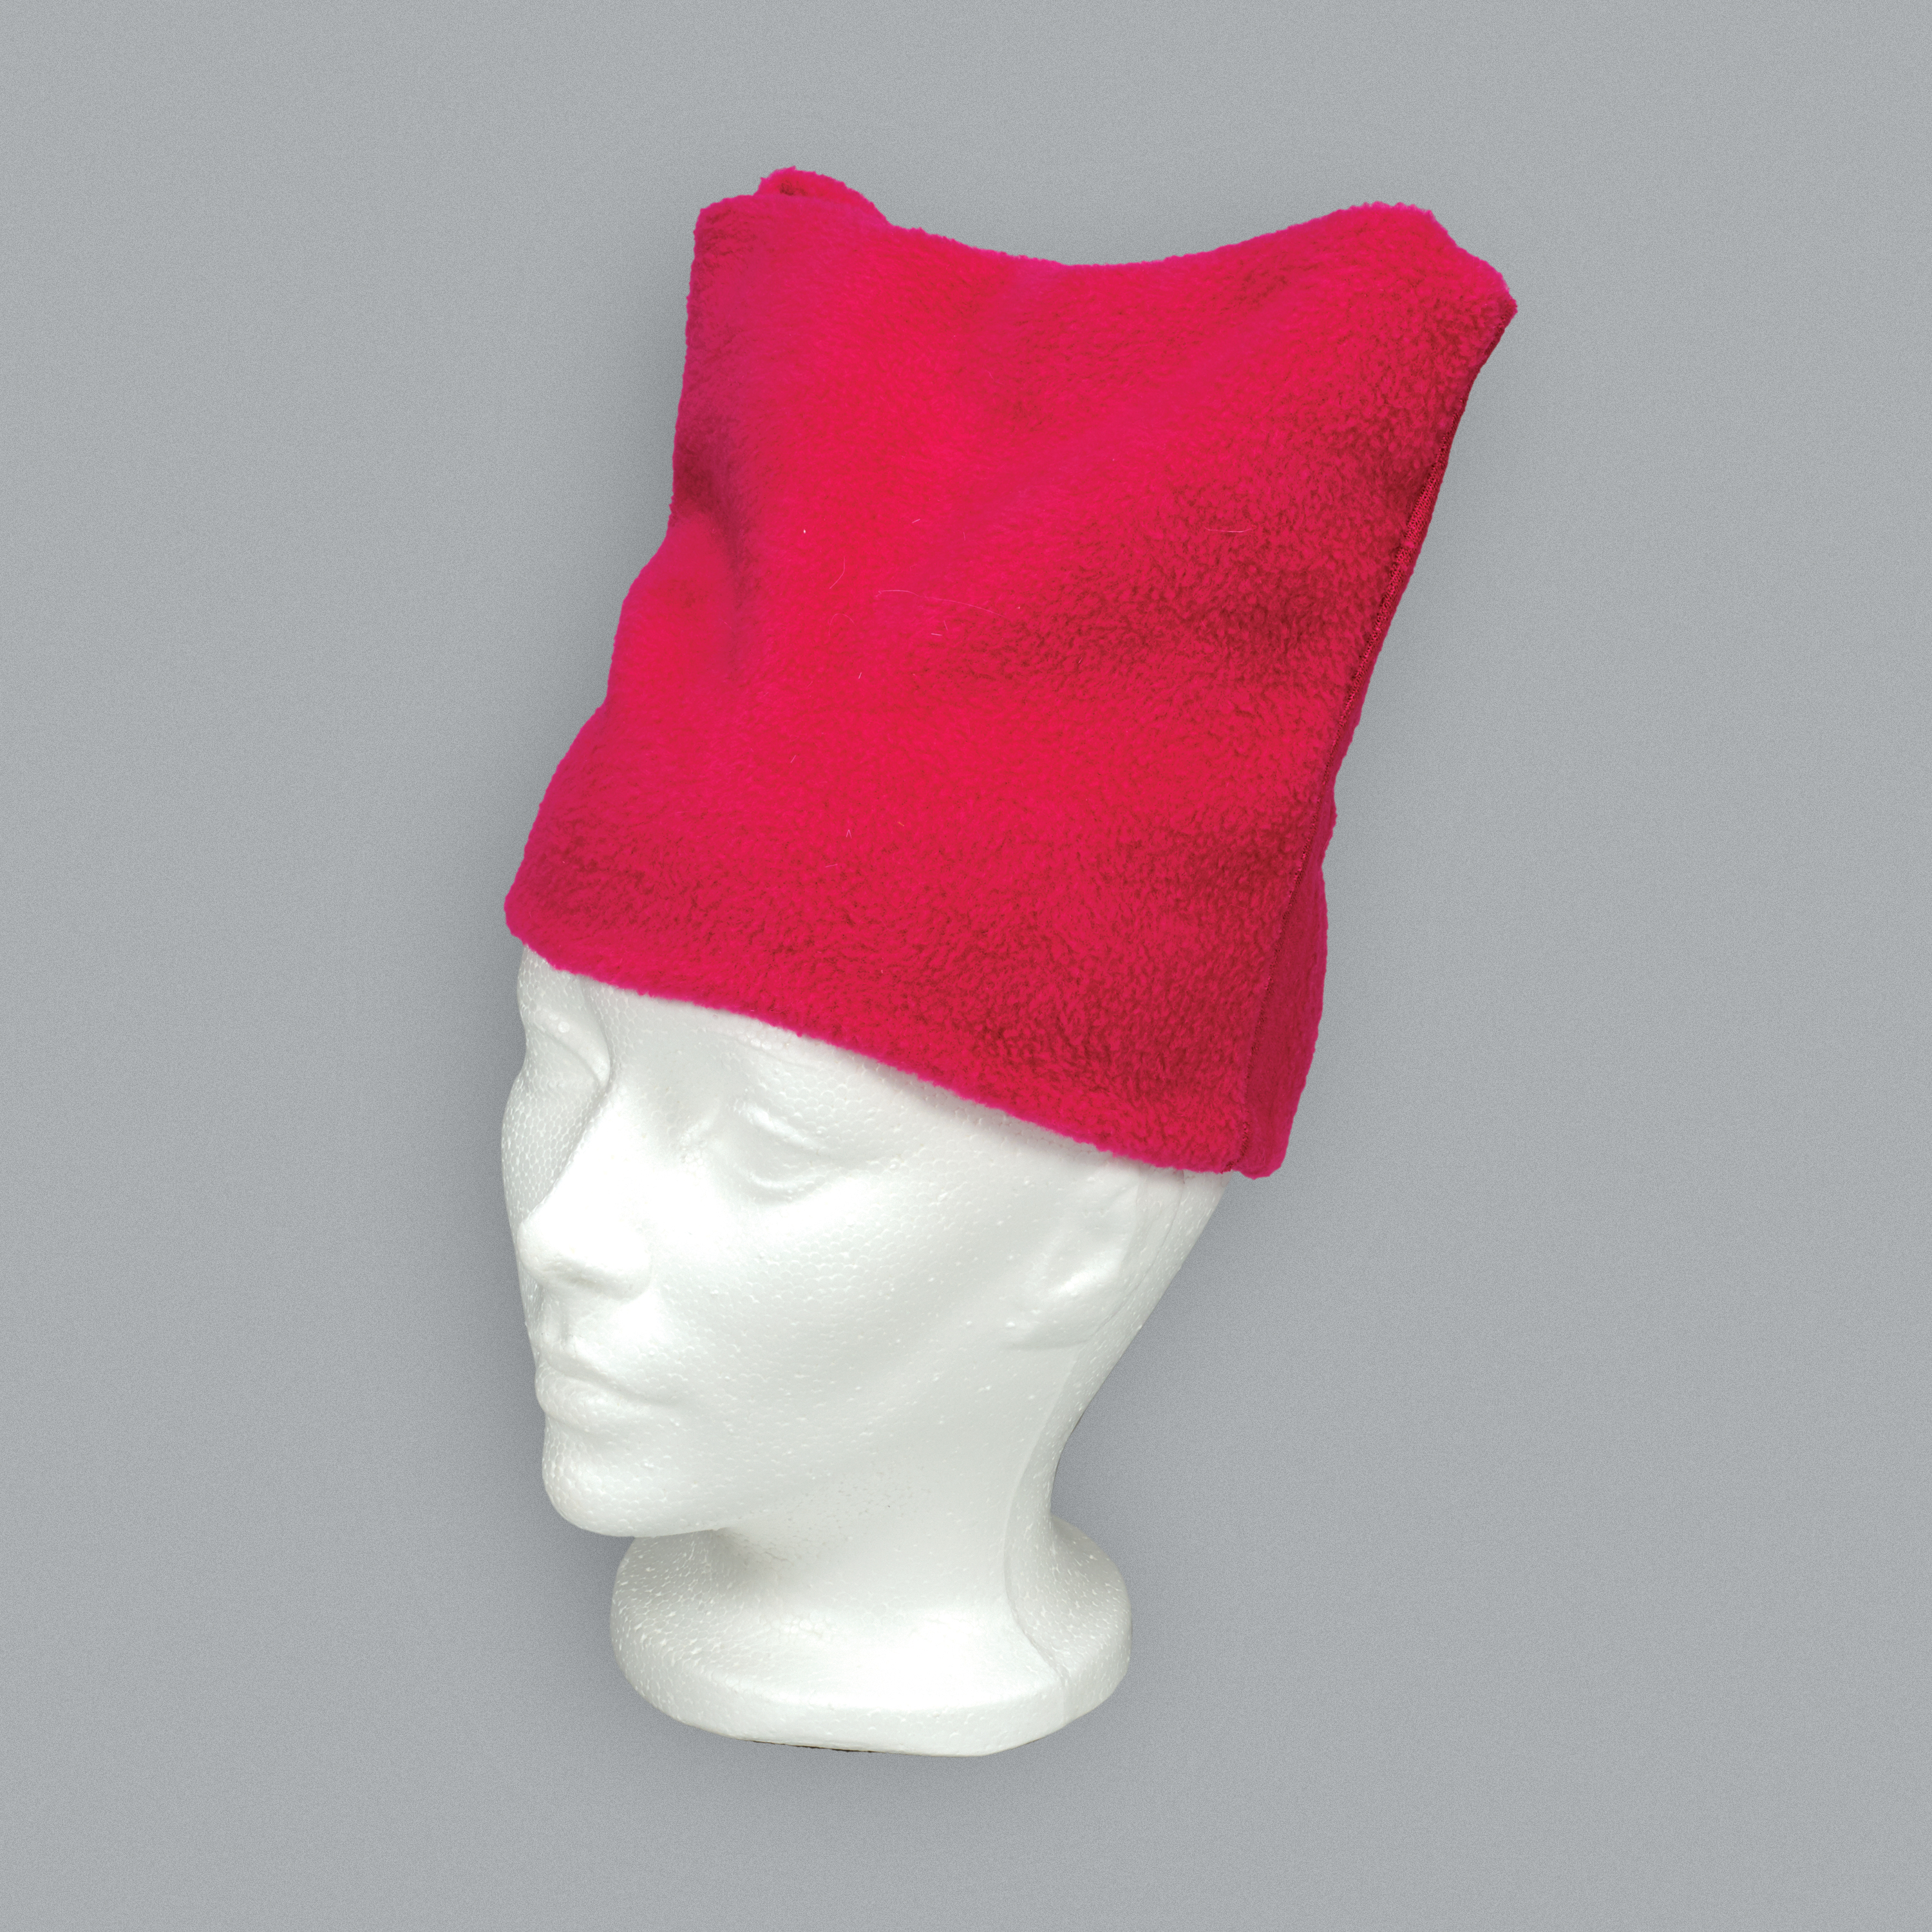 Chapeau rose sur une tête de mannequin.//Pink hat on a mannequin head